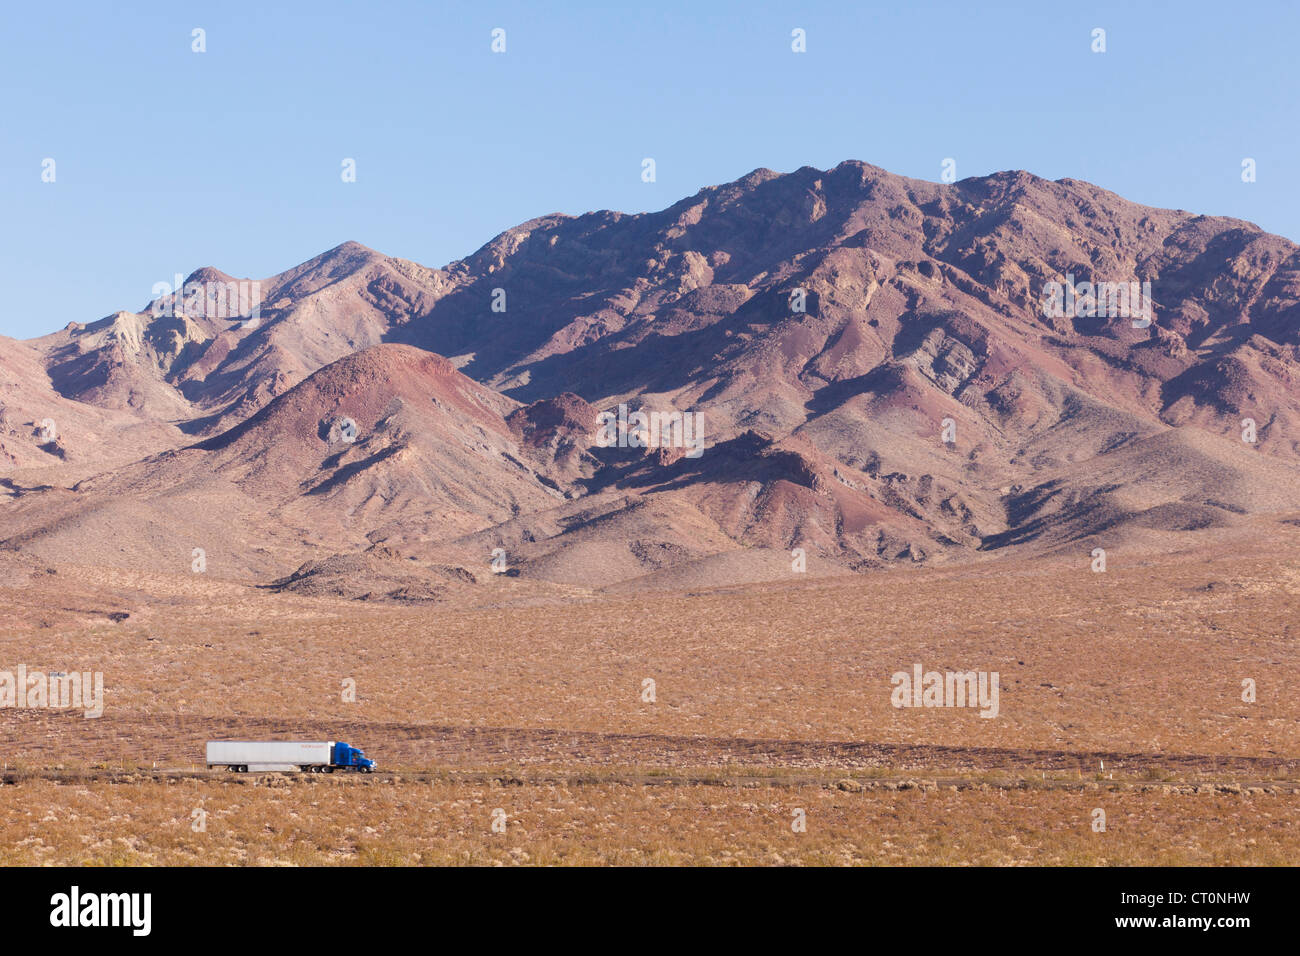 Des montagnes du désert du sud-ouest américain - Californie USA Banque D'Images